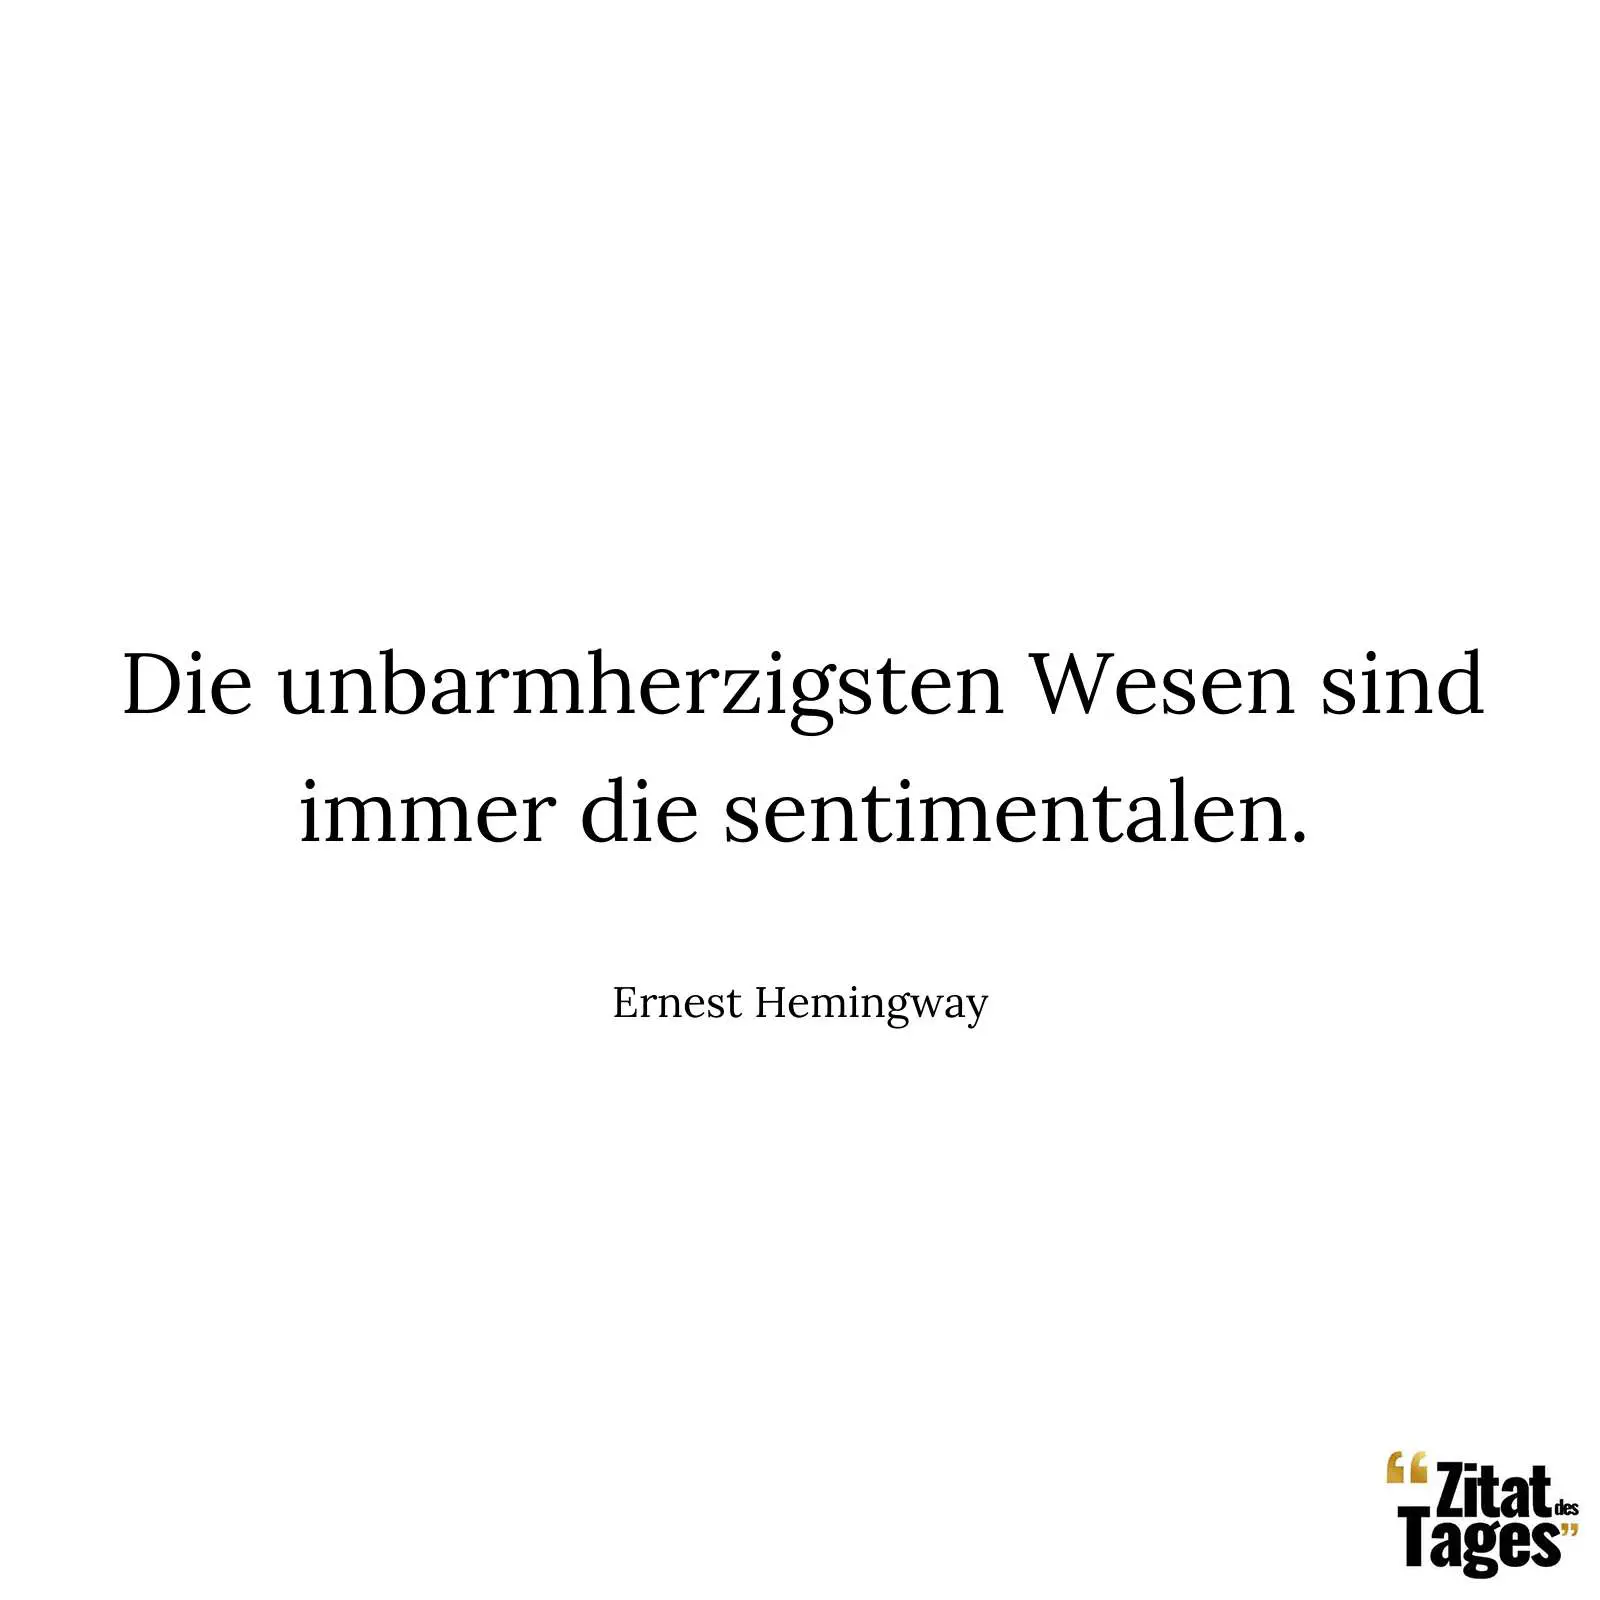 Die unbarmherzigsten Wesen sind immer die sentimentalen. - Ernest Hemingway